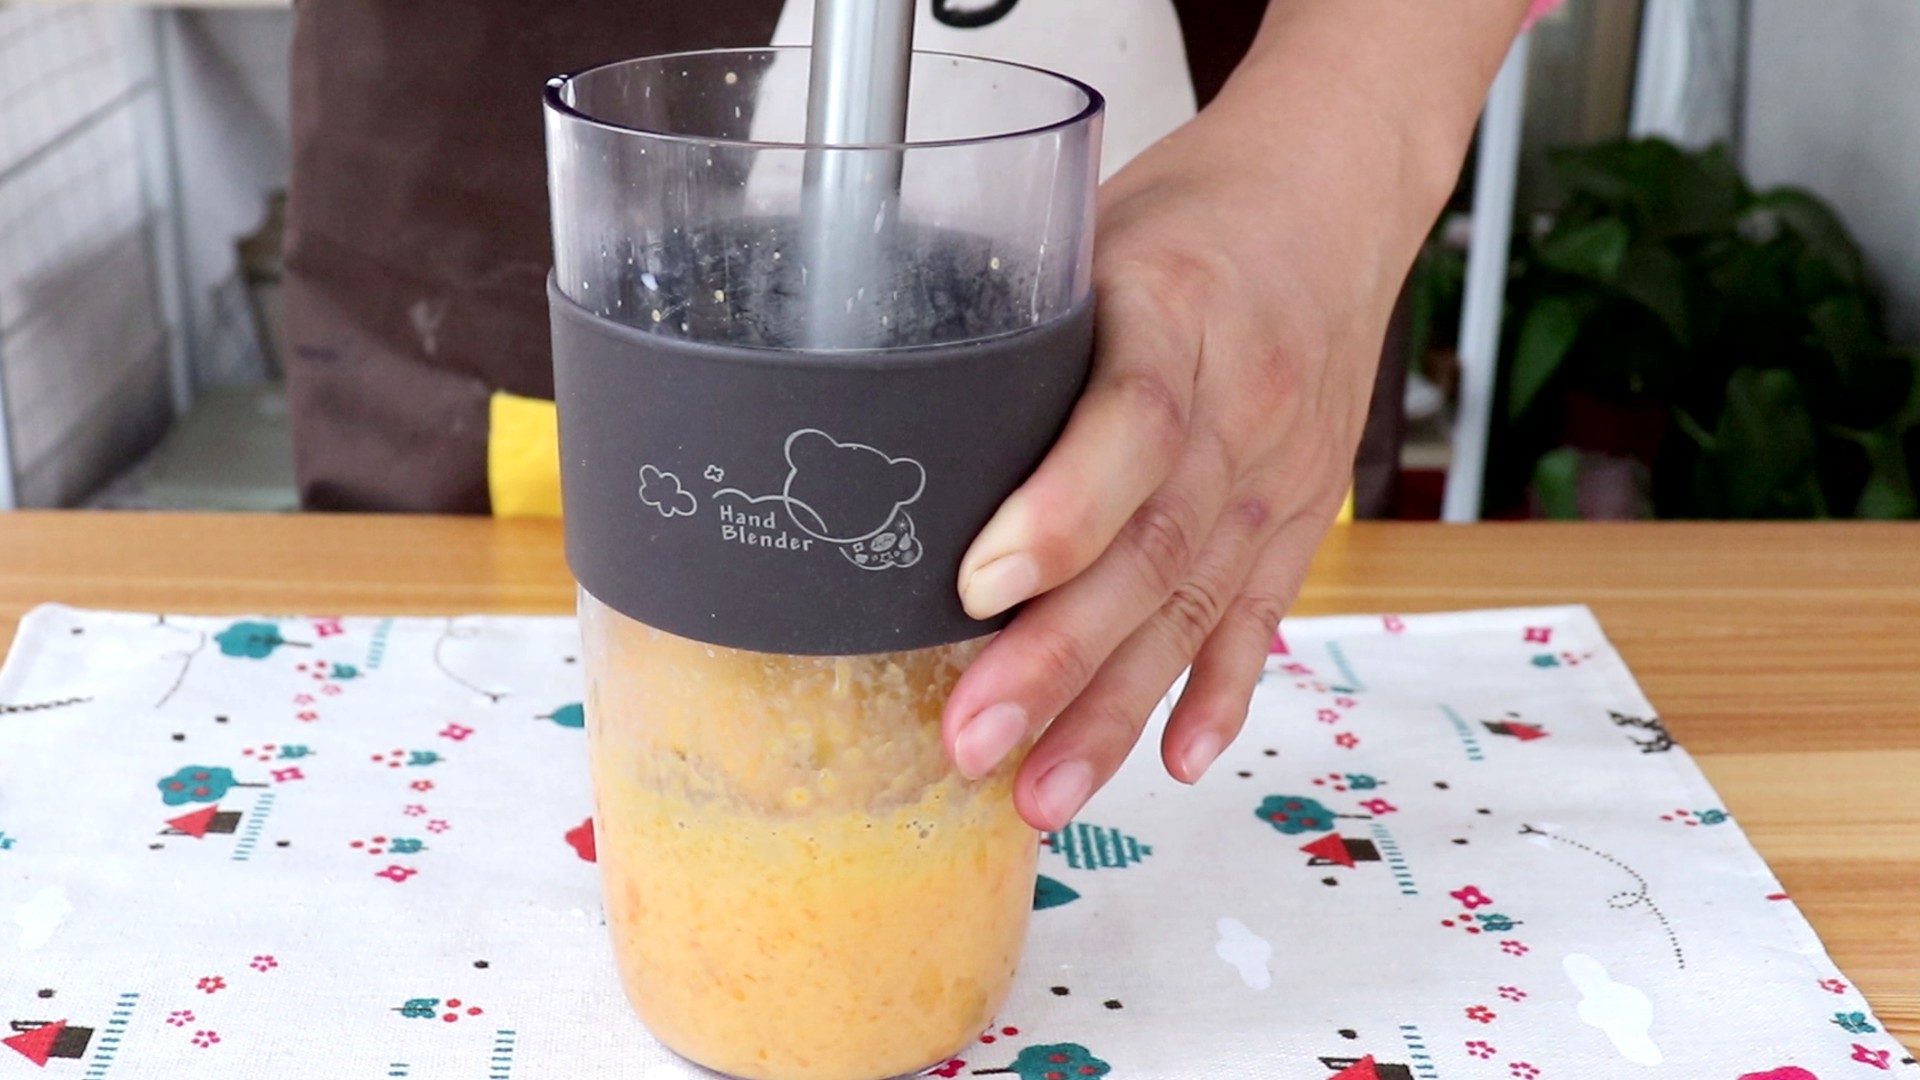 奶香南瓜紫薯泥,料理棒搅打成细腻的泥状</p>
<p>tips：如果有宝宝辅食机，可以用辅食机搅打